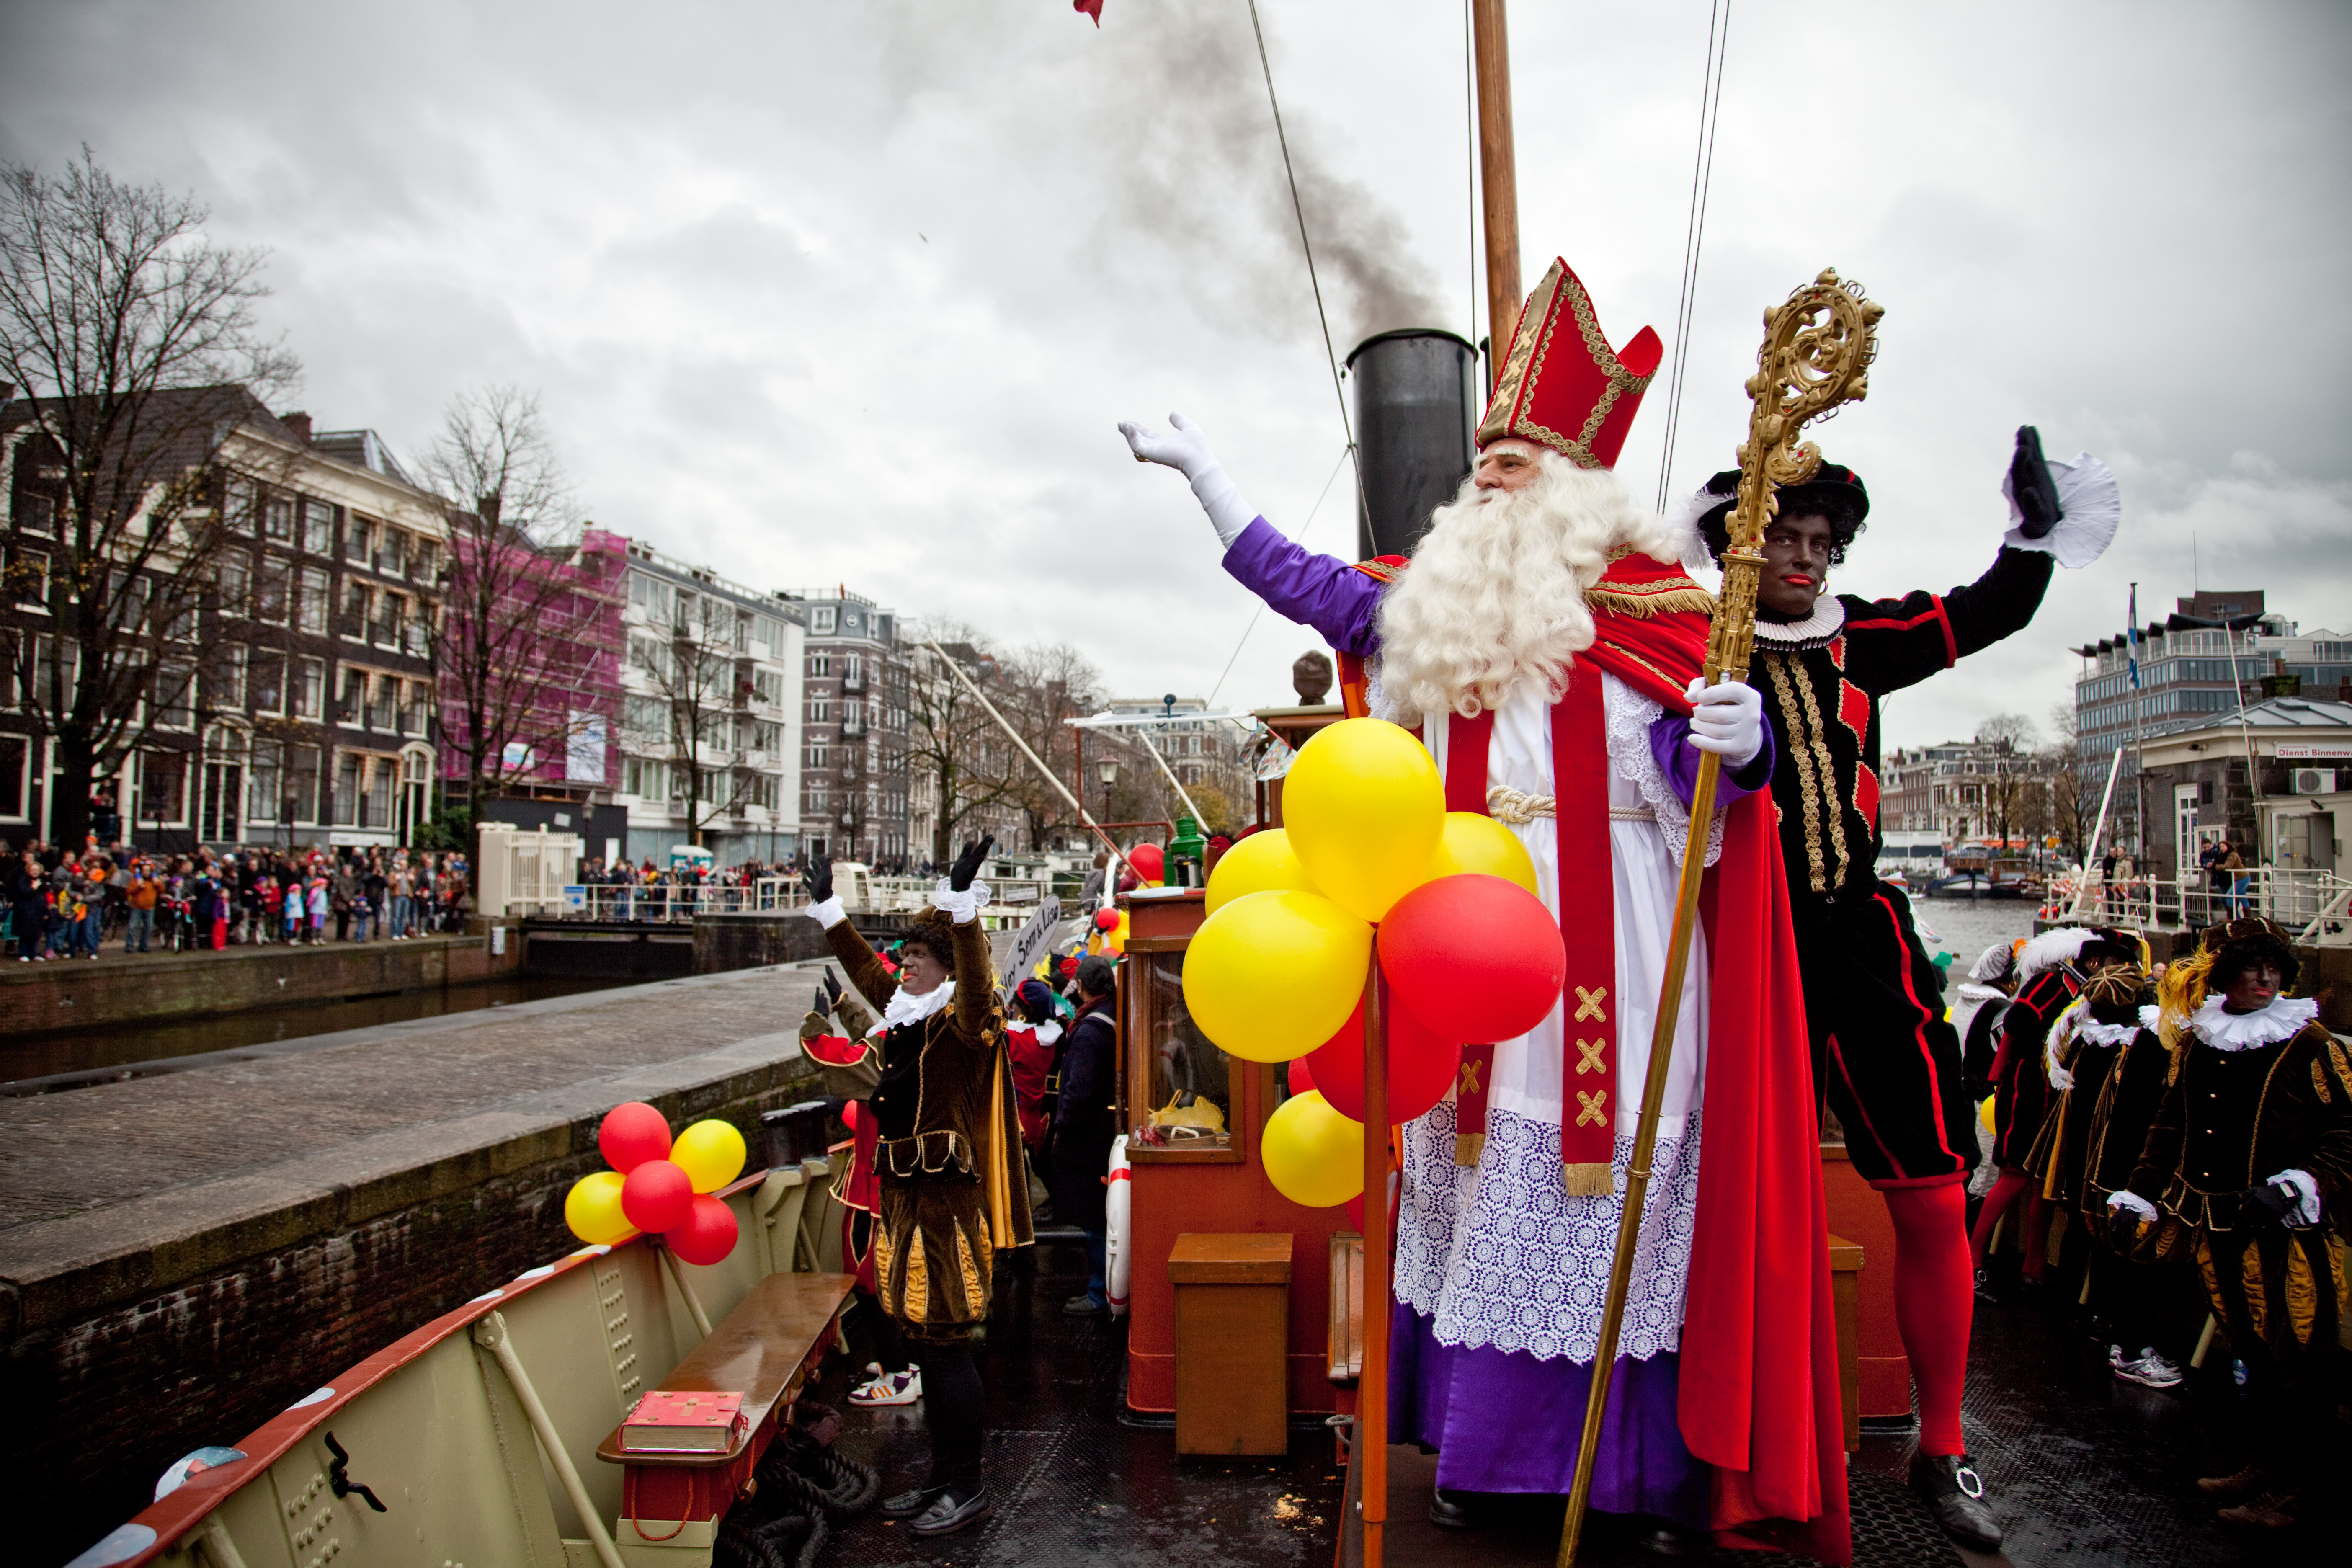 6日 地点:荷兰,比利时等 亮点:圣尼古拉斯节 每年12月5日是荷兰传统的